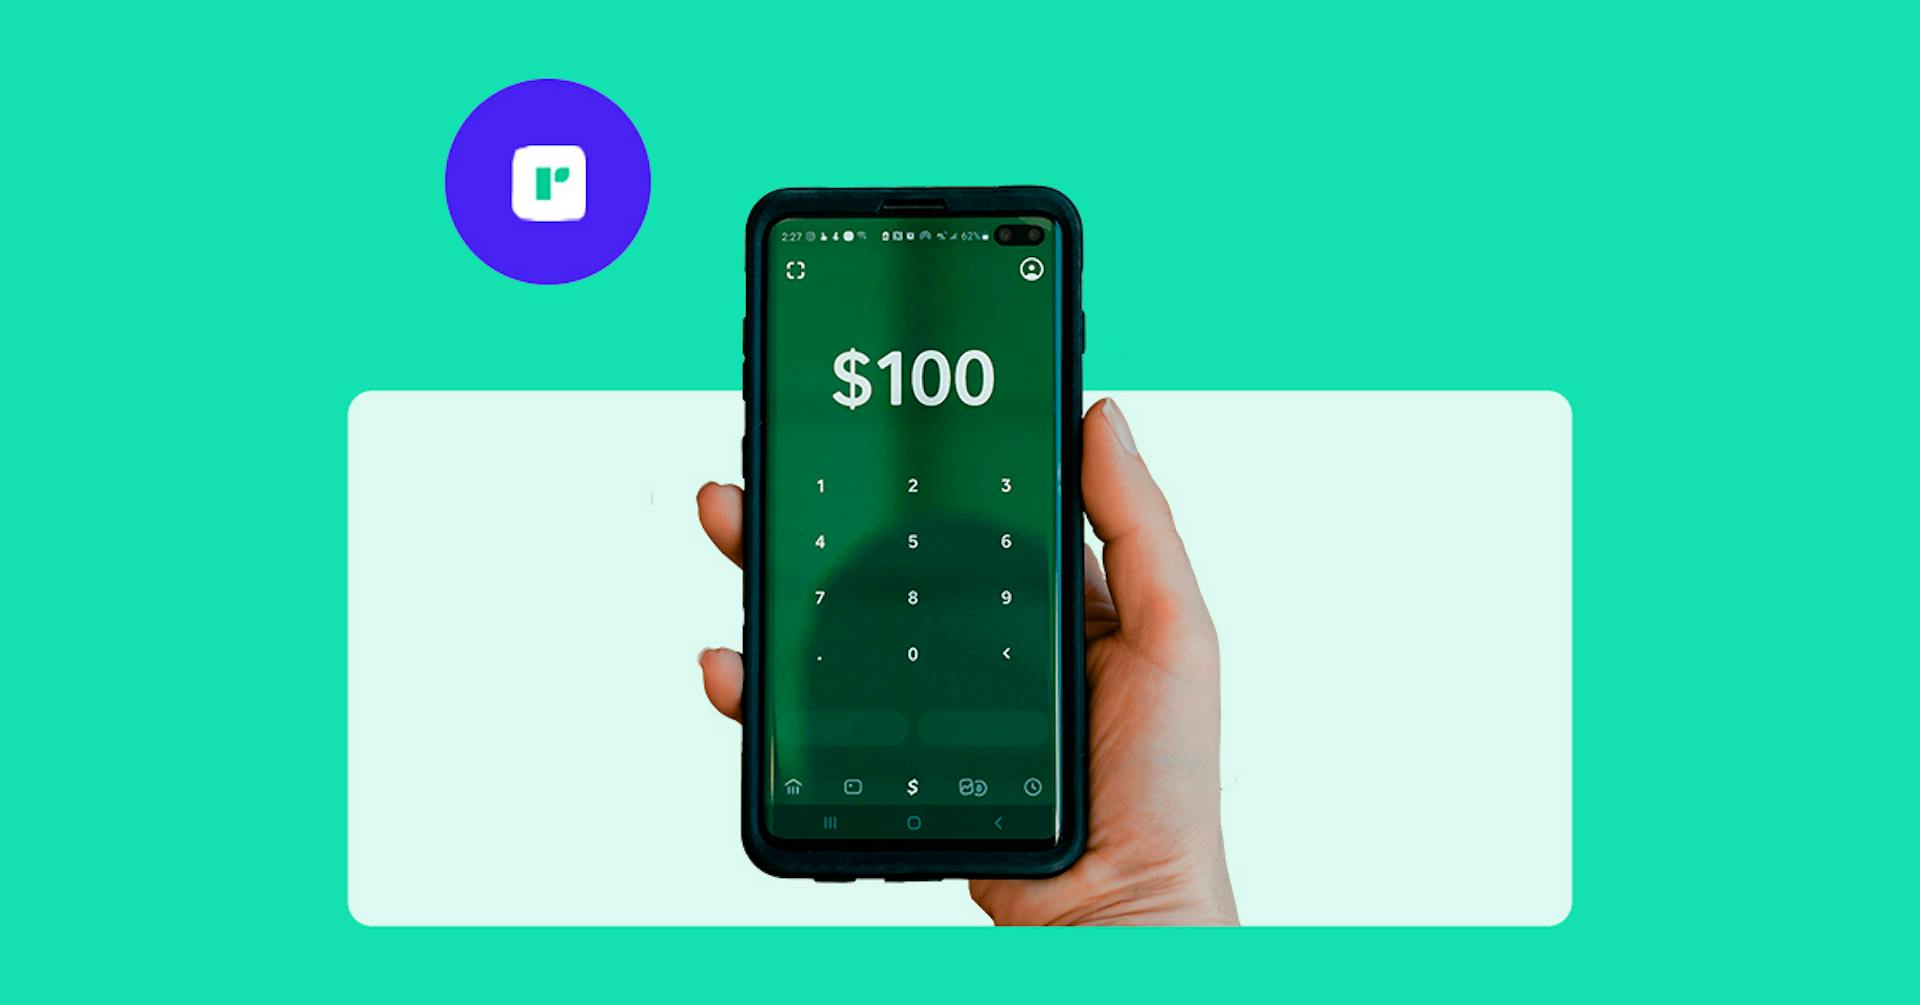 Descubre las mejores apps para ganar dinero y obtén más ingresos desde casa